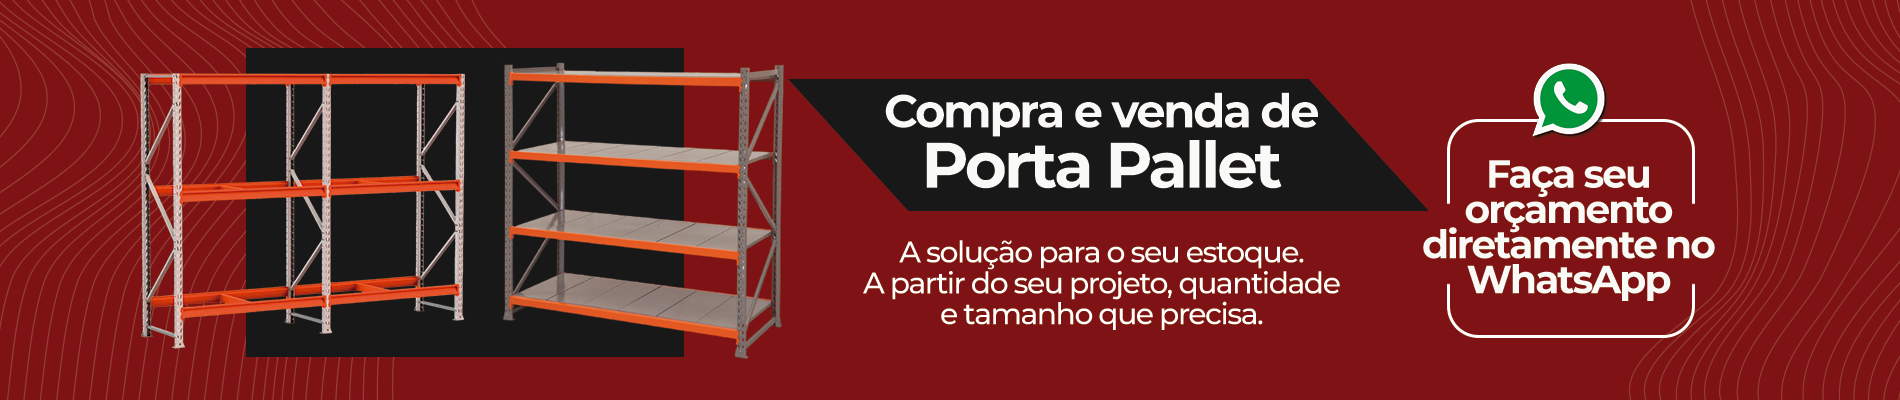 Porta Pallets - Topa Tudo Dos Mineiros, imagem para aparelhos desktop.